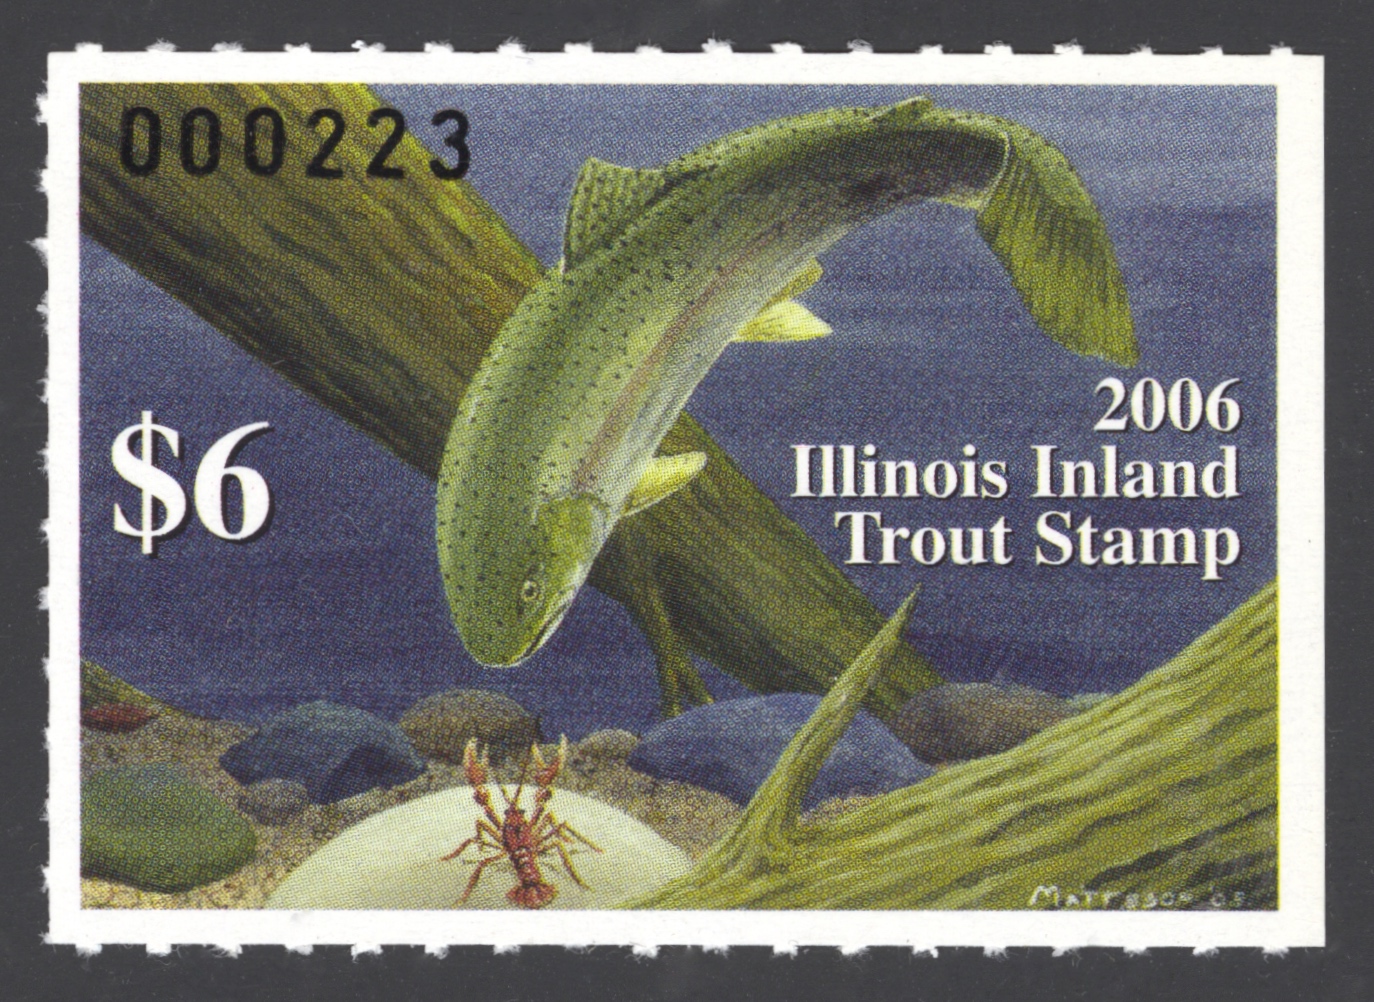 2006 Illinois Inland Tout